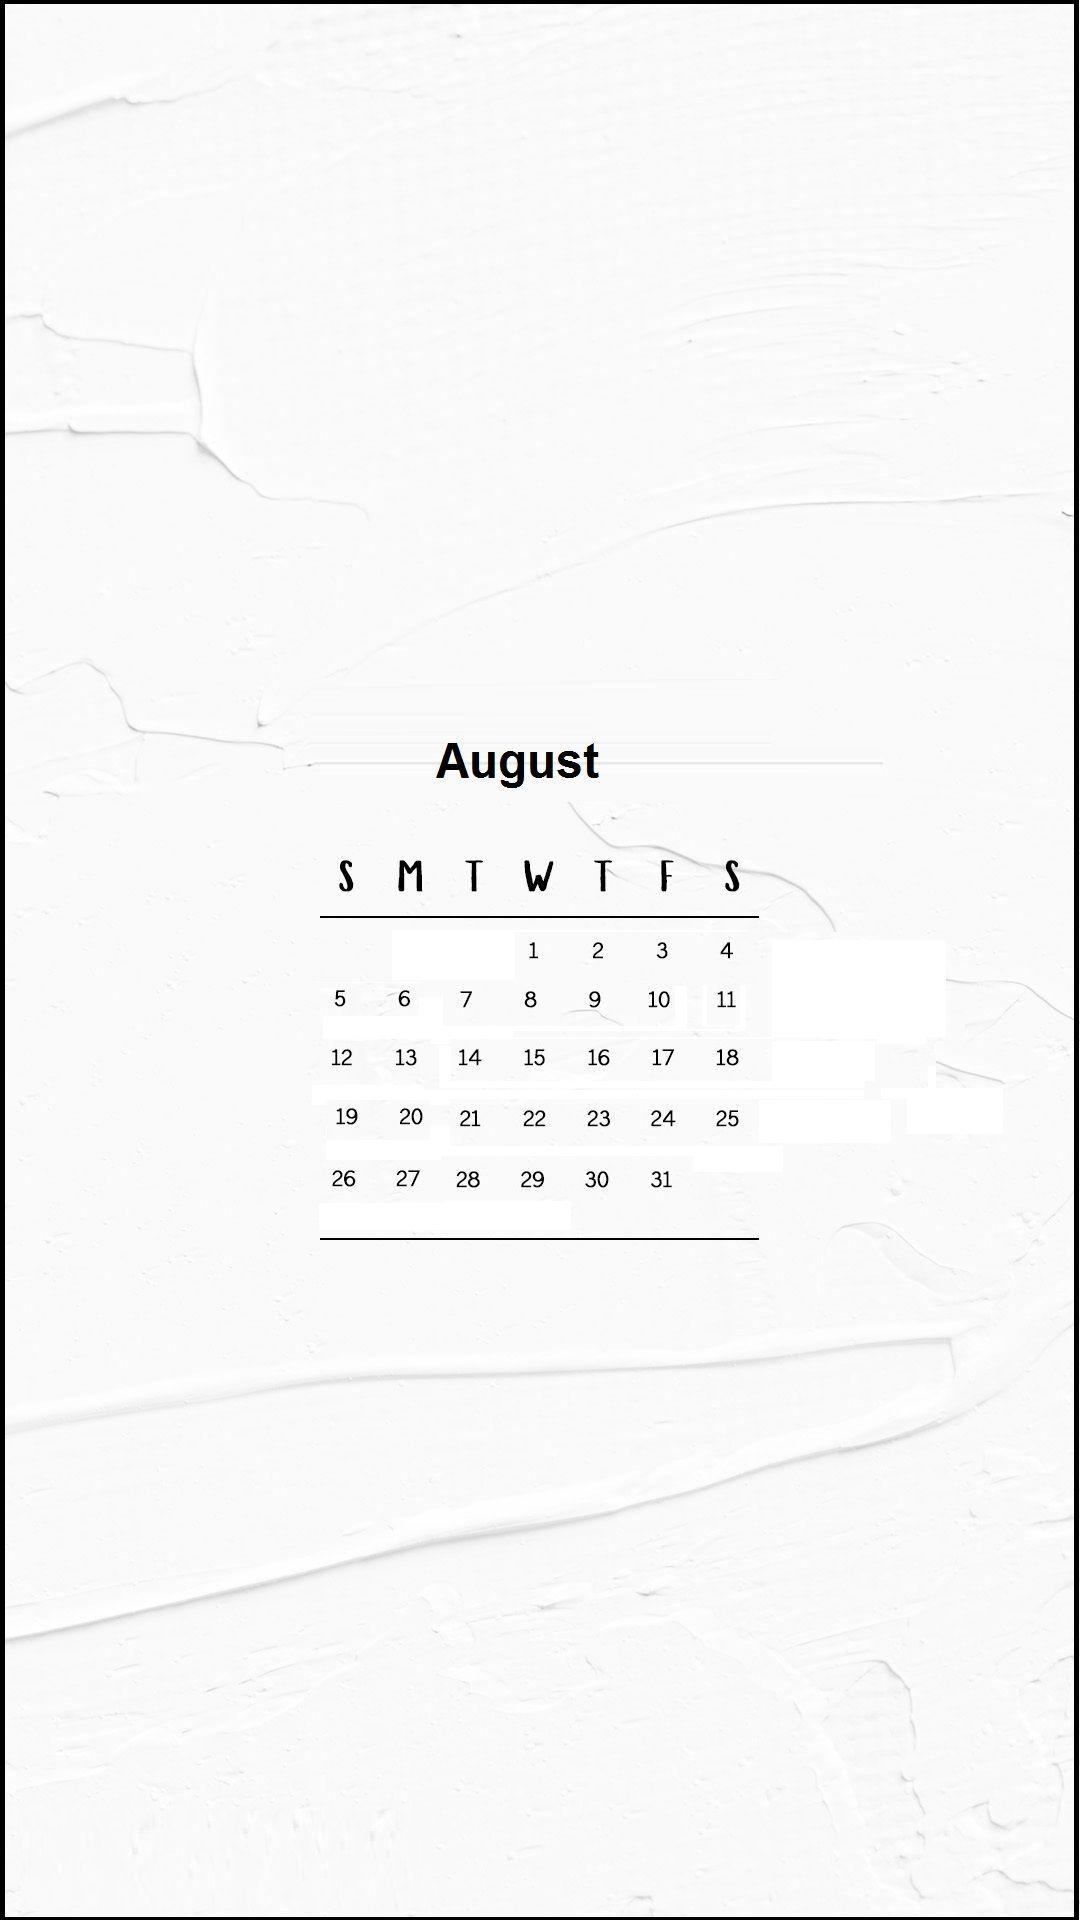 August 2018 iPhone Calendar Wallpaper. Calendar 2018